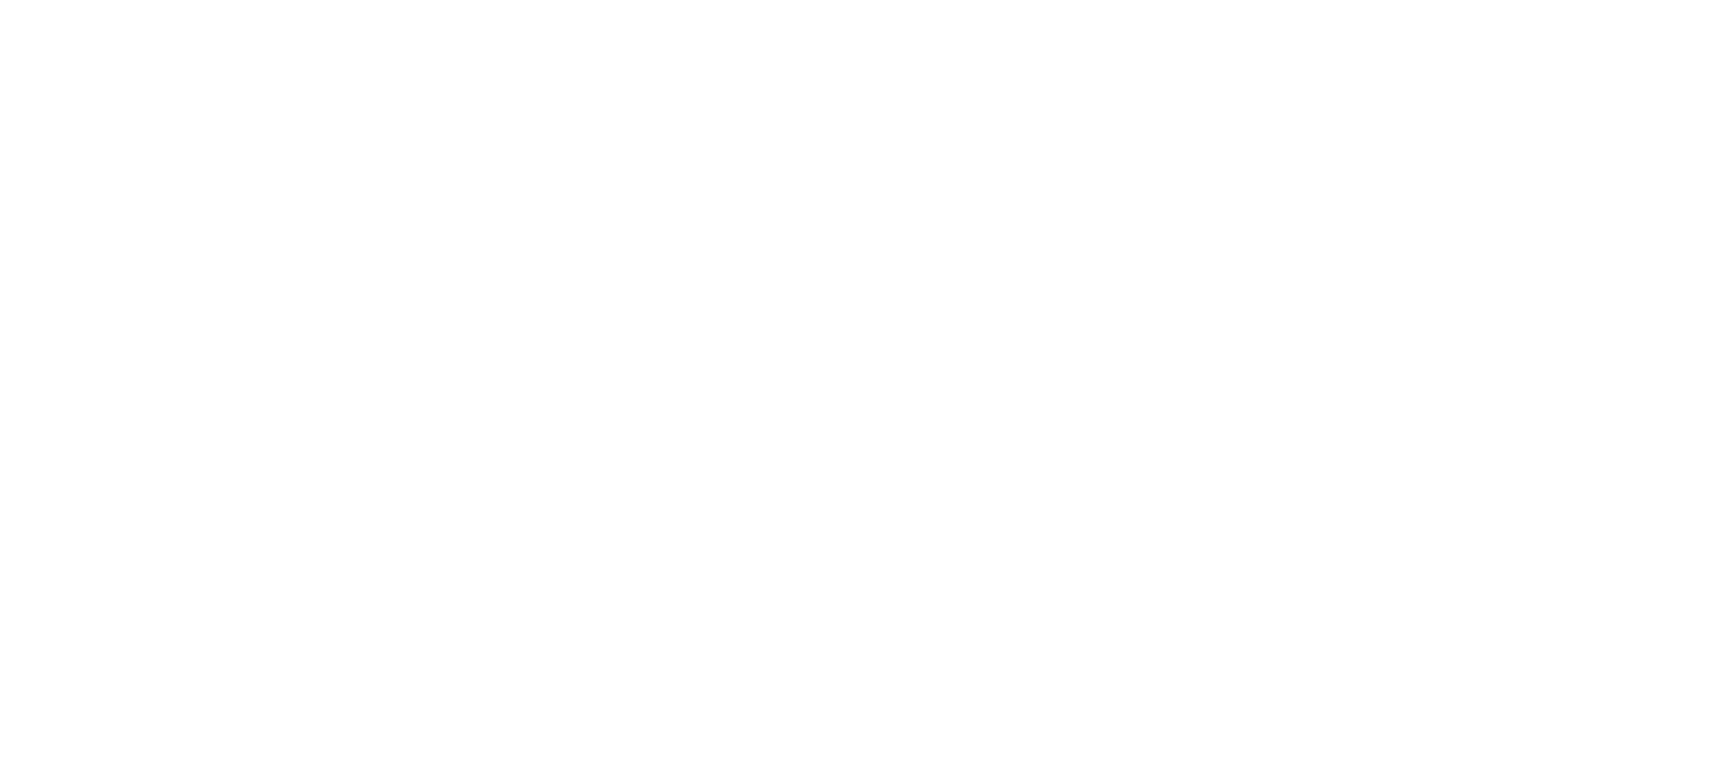 Sønderborg Kommune logo